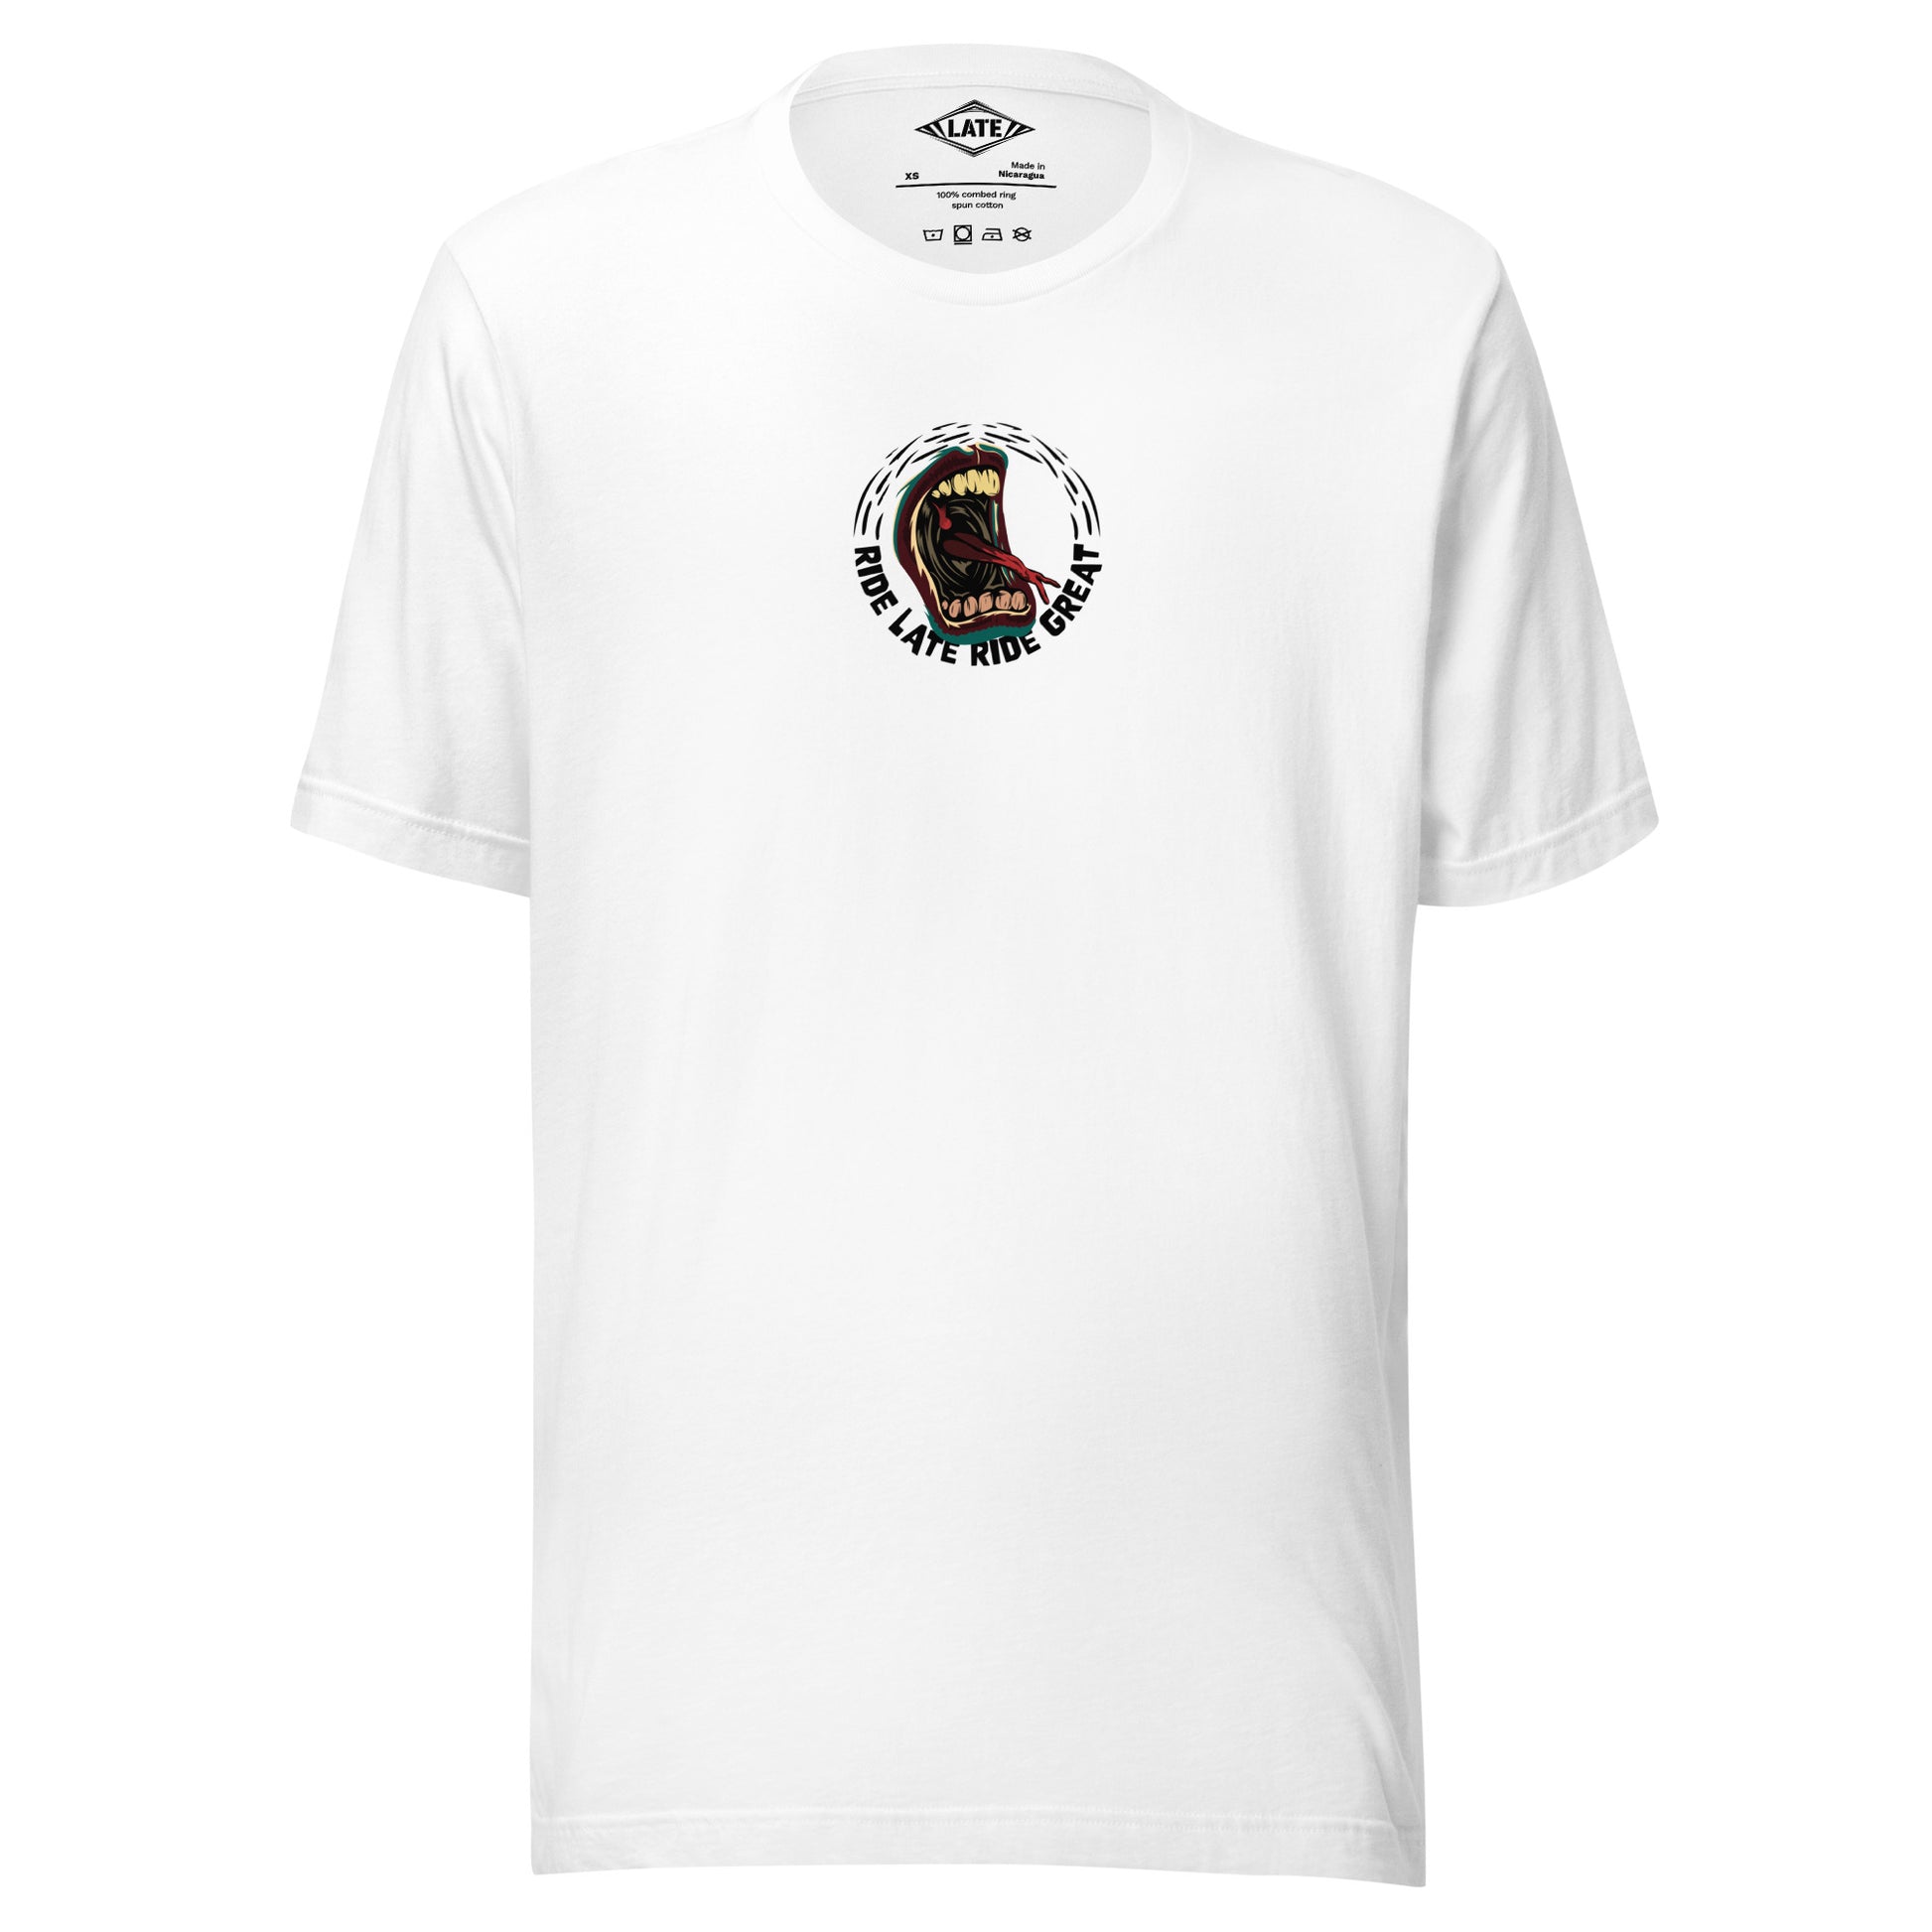 T-Shirt Ride Late Live Great skate style volcom avec un design de bouche qui tire la langue couleur du t-shirt unisex blanc